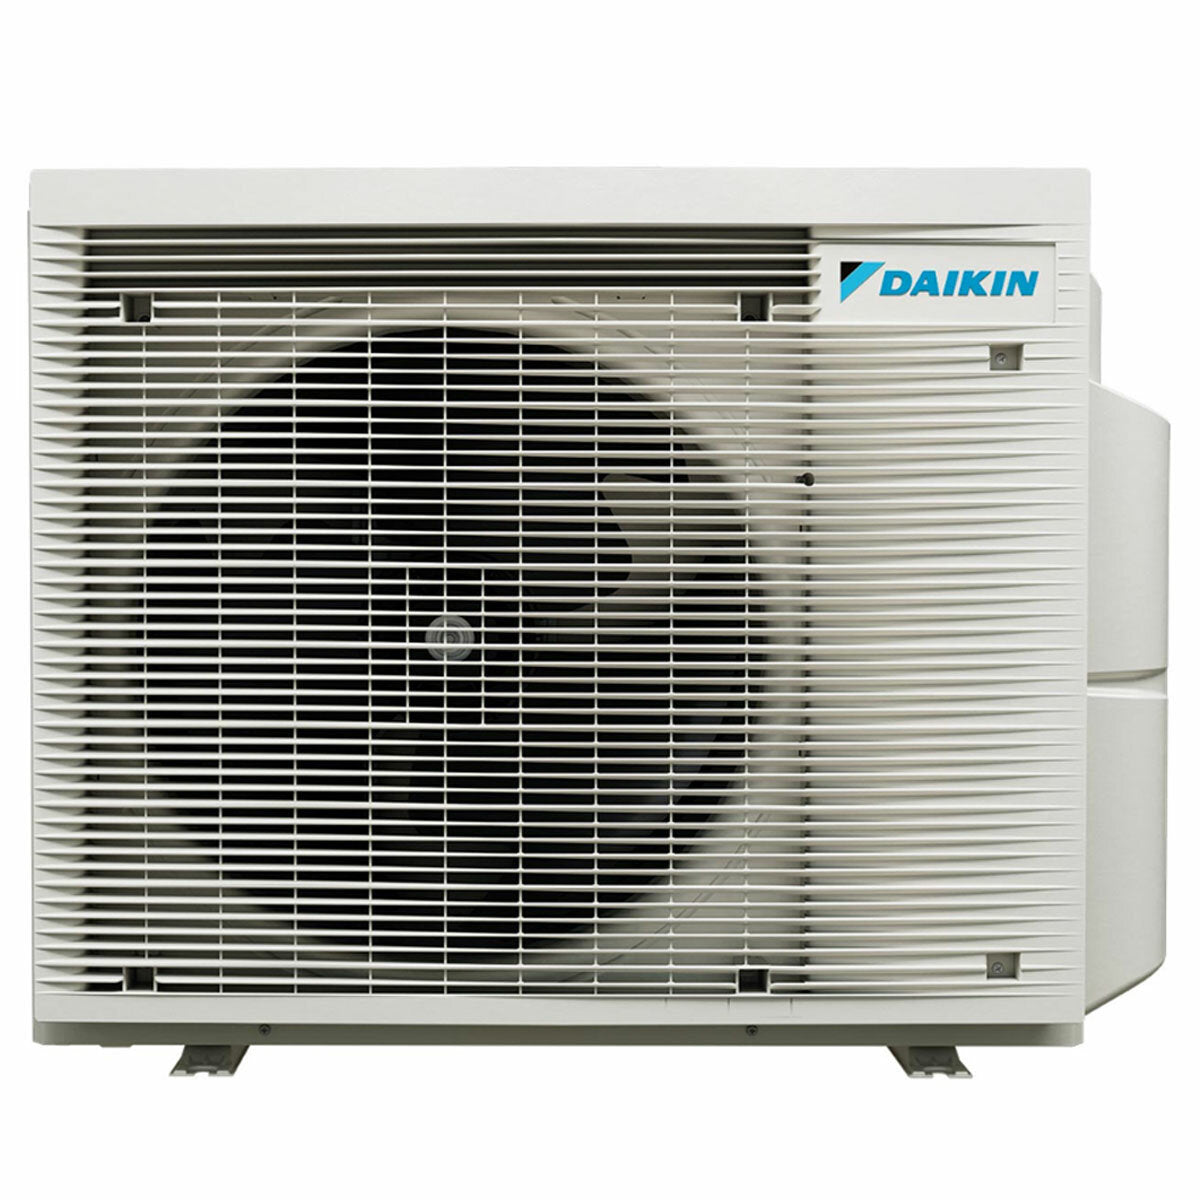 Daikin Emura 3 Trial Split Klimaanlage 9000+12000+12000 BTU Inverter A+ WLAN Außengerät 6,8 kW Weiß